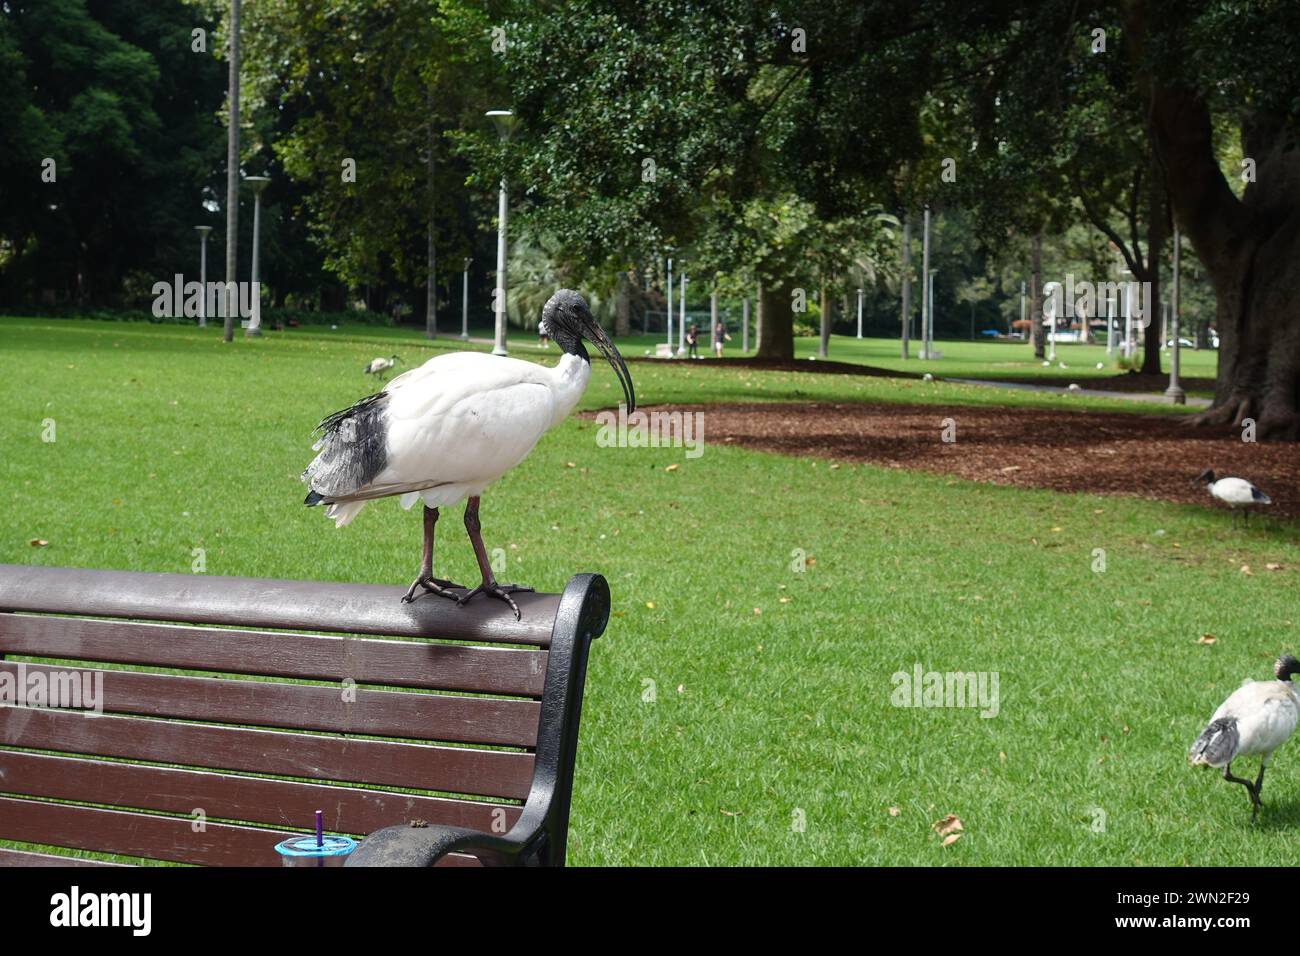 Ein australischer weißer Ibis-Vogel, der häufig in Parks und städtischen Gebieten in Sydney, Australien, zu finden ist, sucht nach Nahrung. Mit seinem markanten weißen Gefieder und Stockfoto